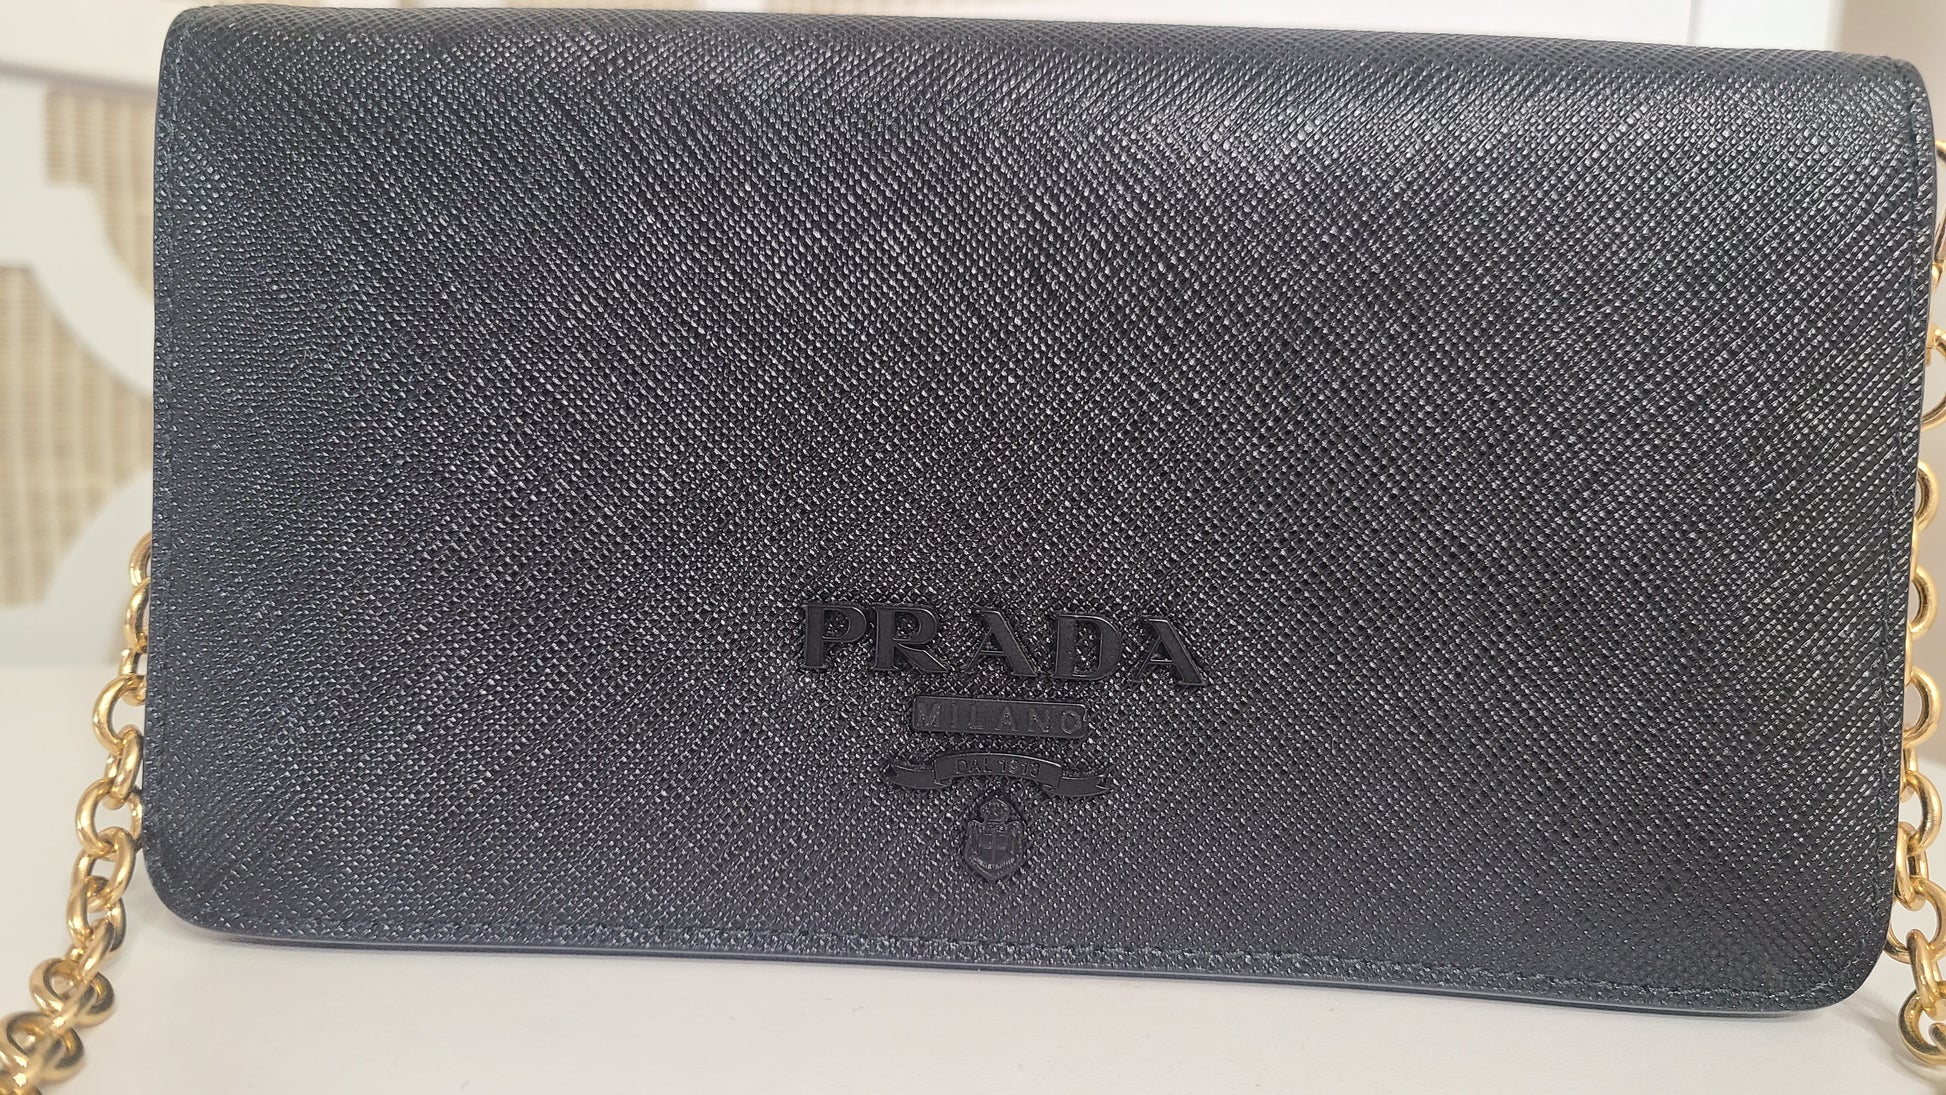 PRADA Saffiano Leather Wallet on Chain Clutch Crossbody Bag Black